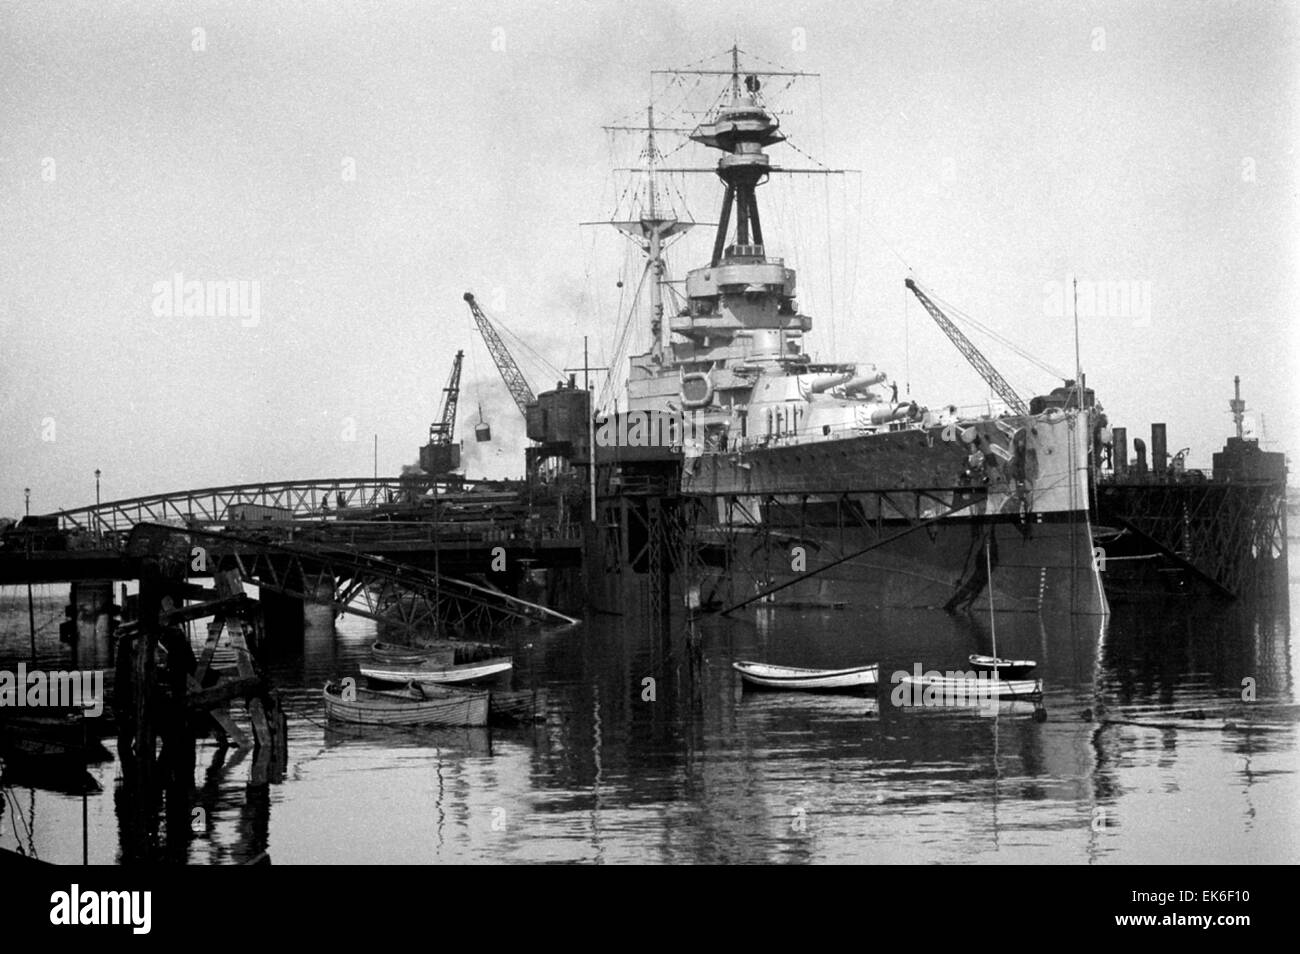 AJAXNETPHOTO. 1920-1930S. PORTSMOUTH, Angleterre. BATTLESHIP - REPOSER - un cuirassé de Classe Royal Sovereign, éventuellement le HMS ROYAL OAK (10/1939) IRRÉCUPÉRABLES OU HMS VENGEANCE, DANS L'énorme dock flottant SITUÉ À NR FLATHOUSE Quay. Remarque La LINKSPAN RELIANT LA JETÉE DU LAC FONTAINE À QUAI. SISTER SHIP ROYAL SOVEREIGN A ÉTÉ CONSTRUIT À Portsmouth. PHOTO:AJAX VINTAGE PHOTO LIBRARY REF :()AVL Banque D'Images